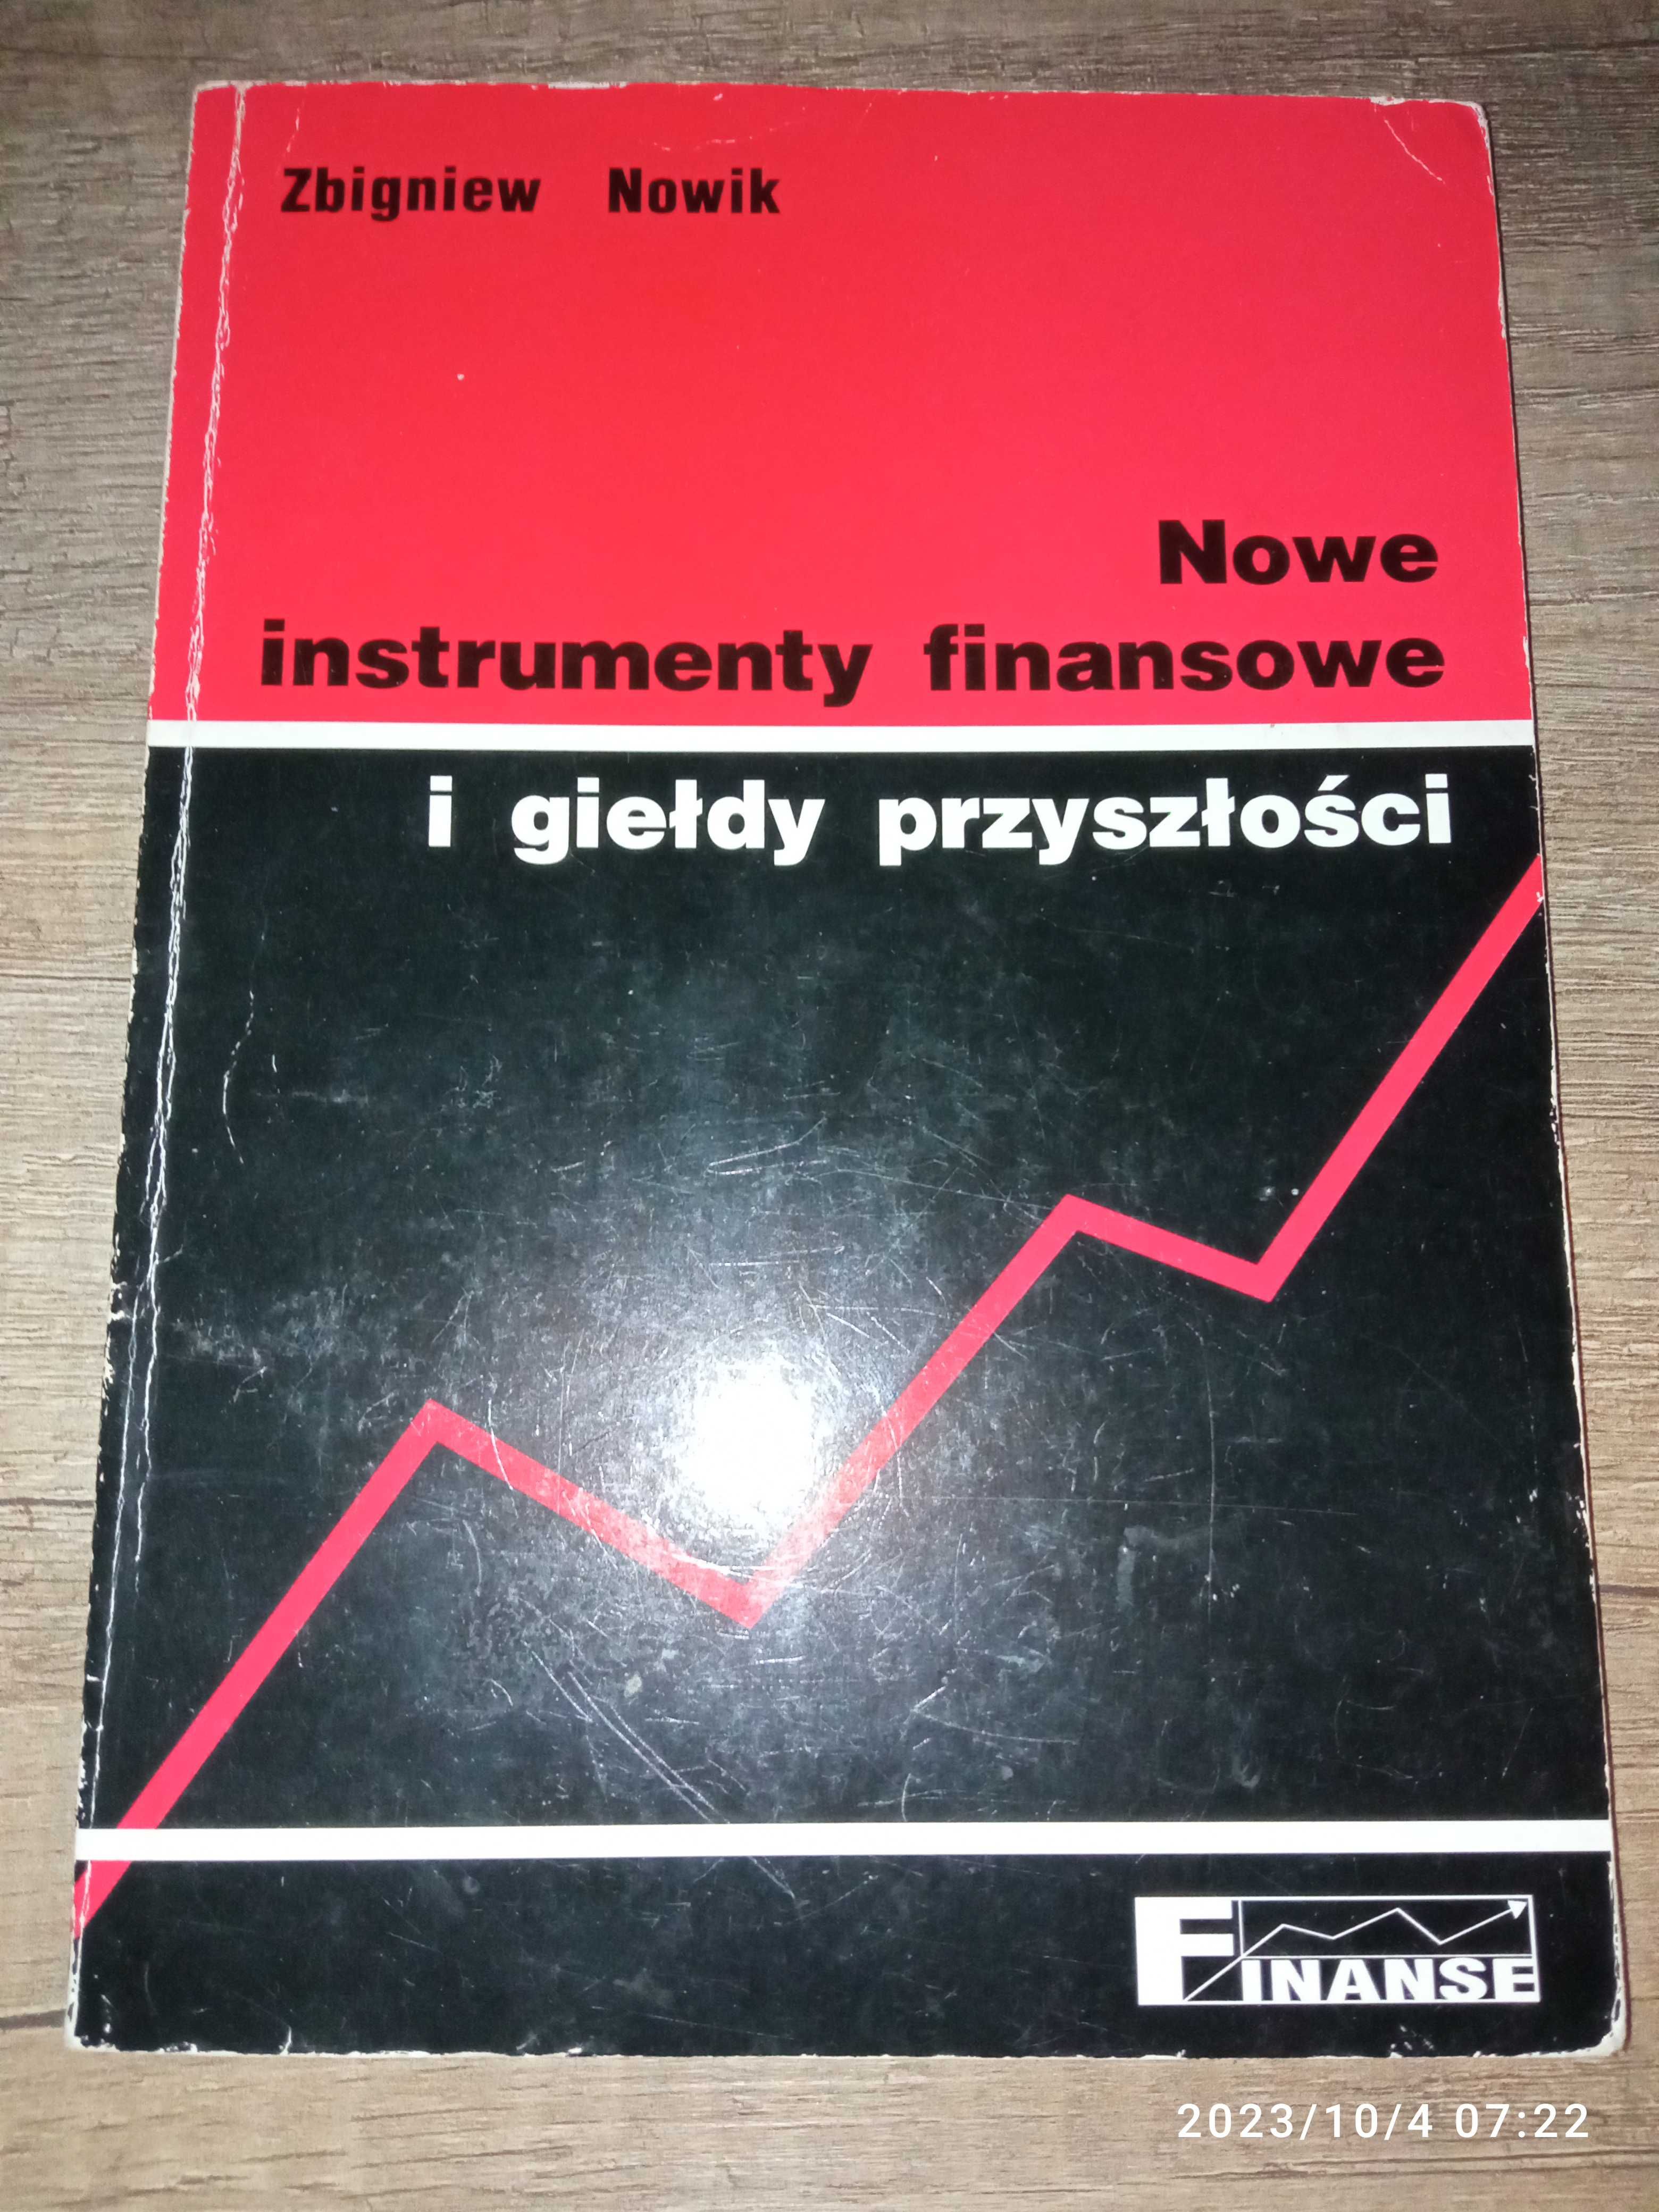 Nowe instrumenty finansowe i giełdy przyszłości Z. Nowik